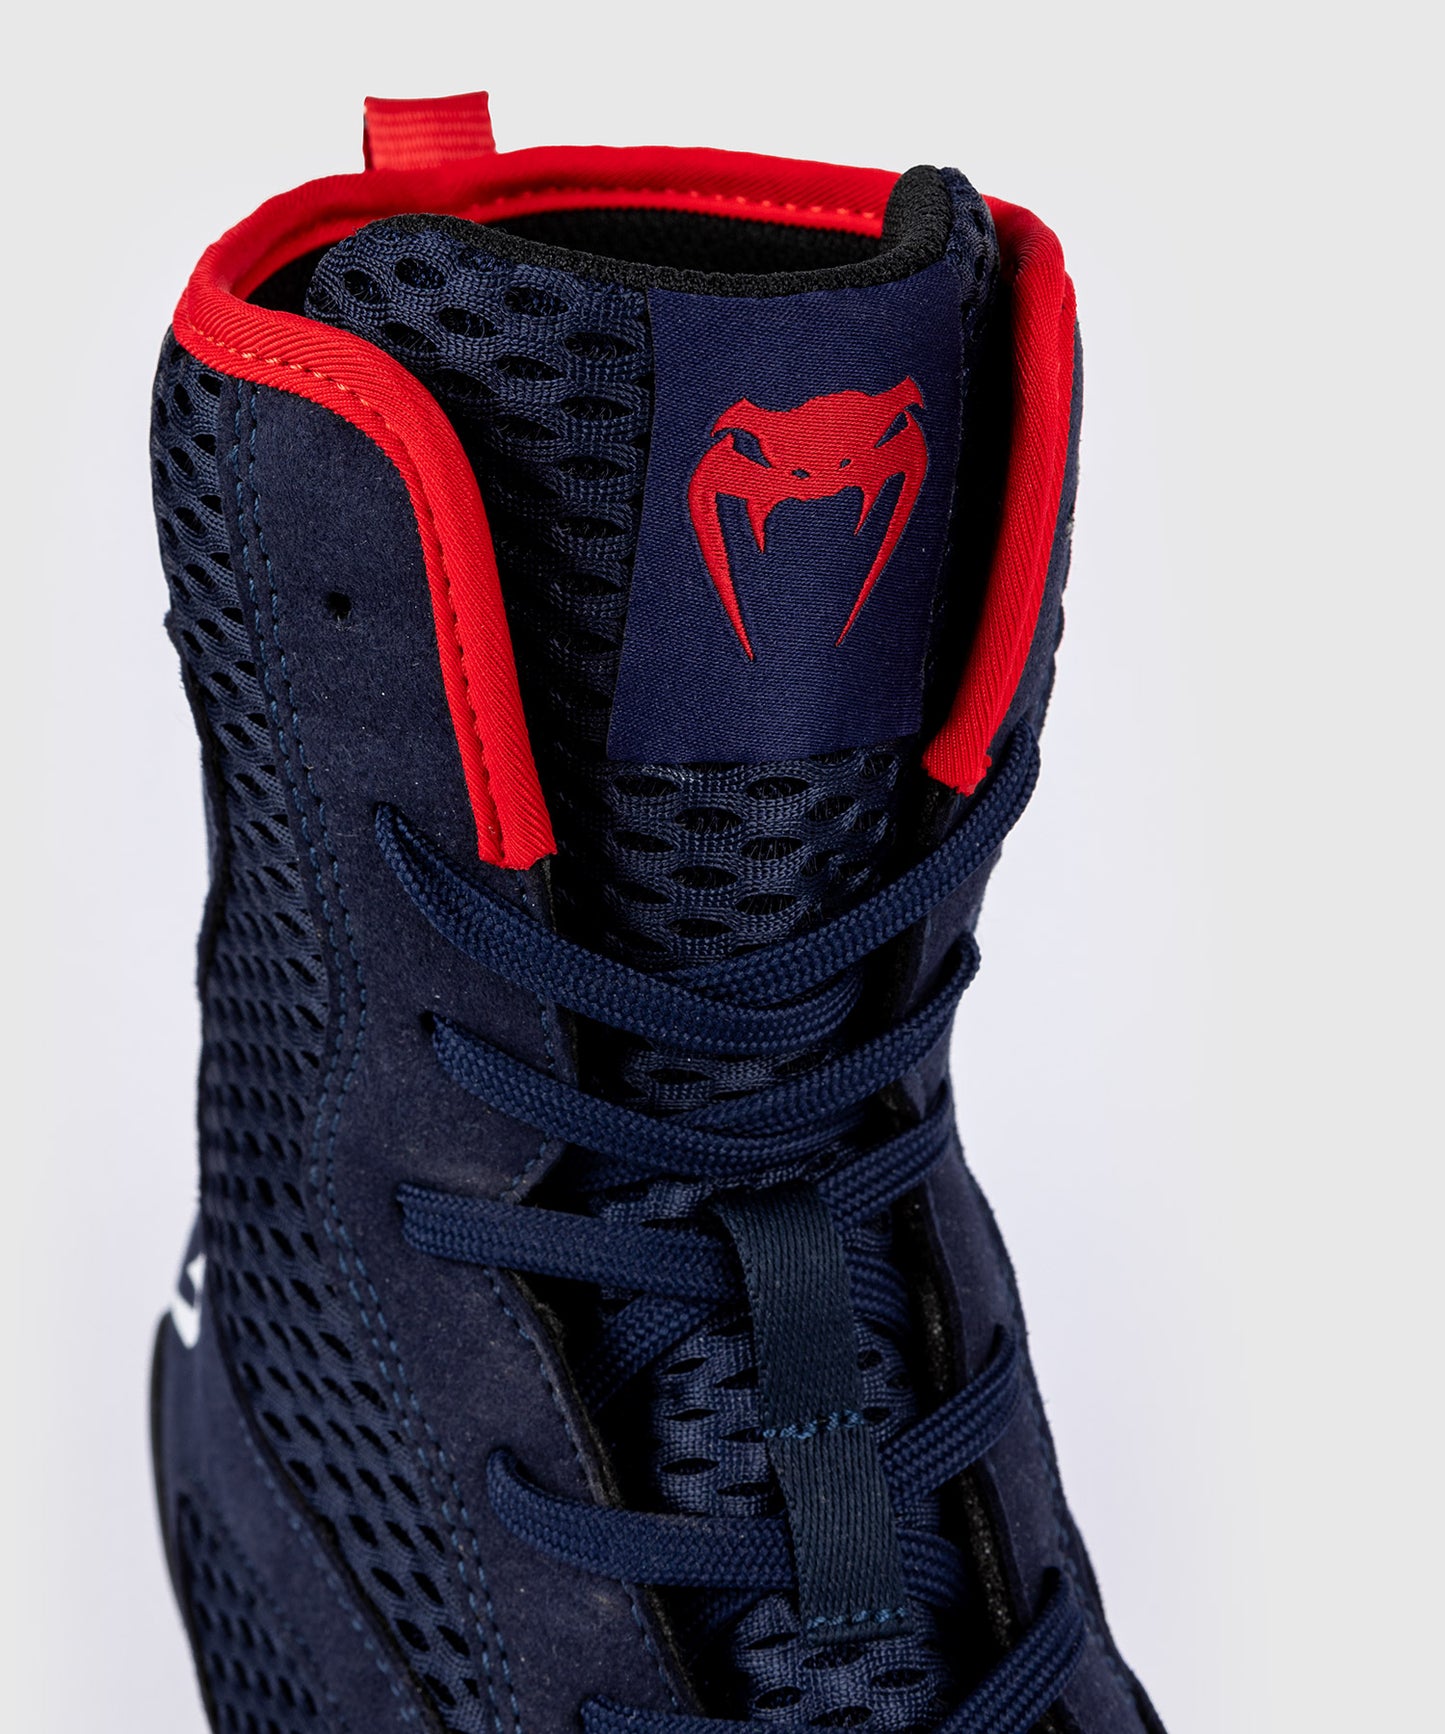 Chaussures de Boxe Venum Contender - Bleu marine/Rouge